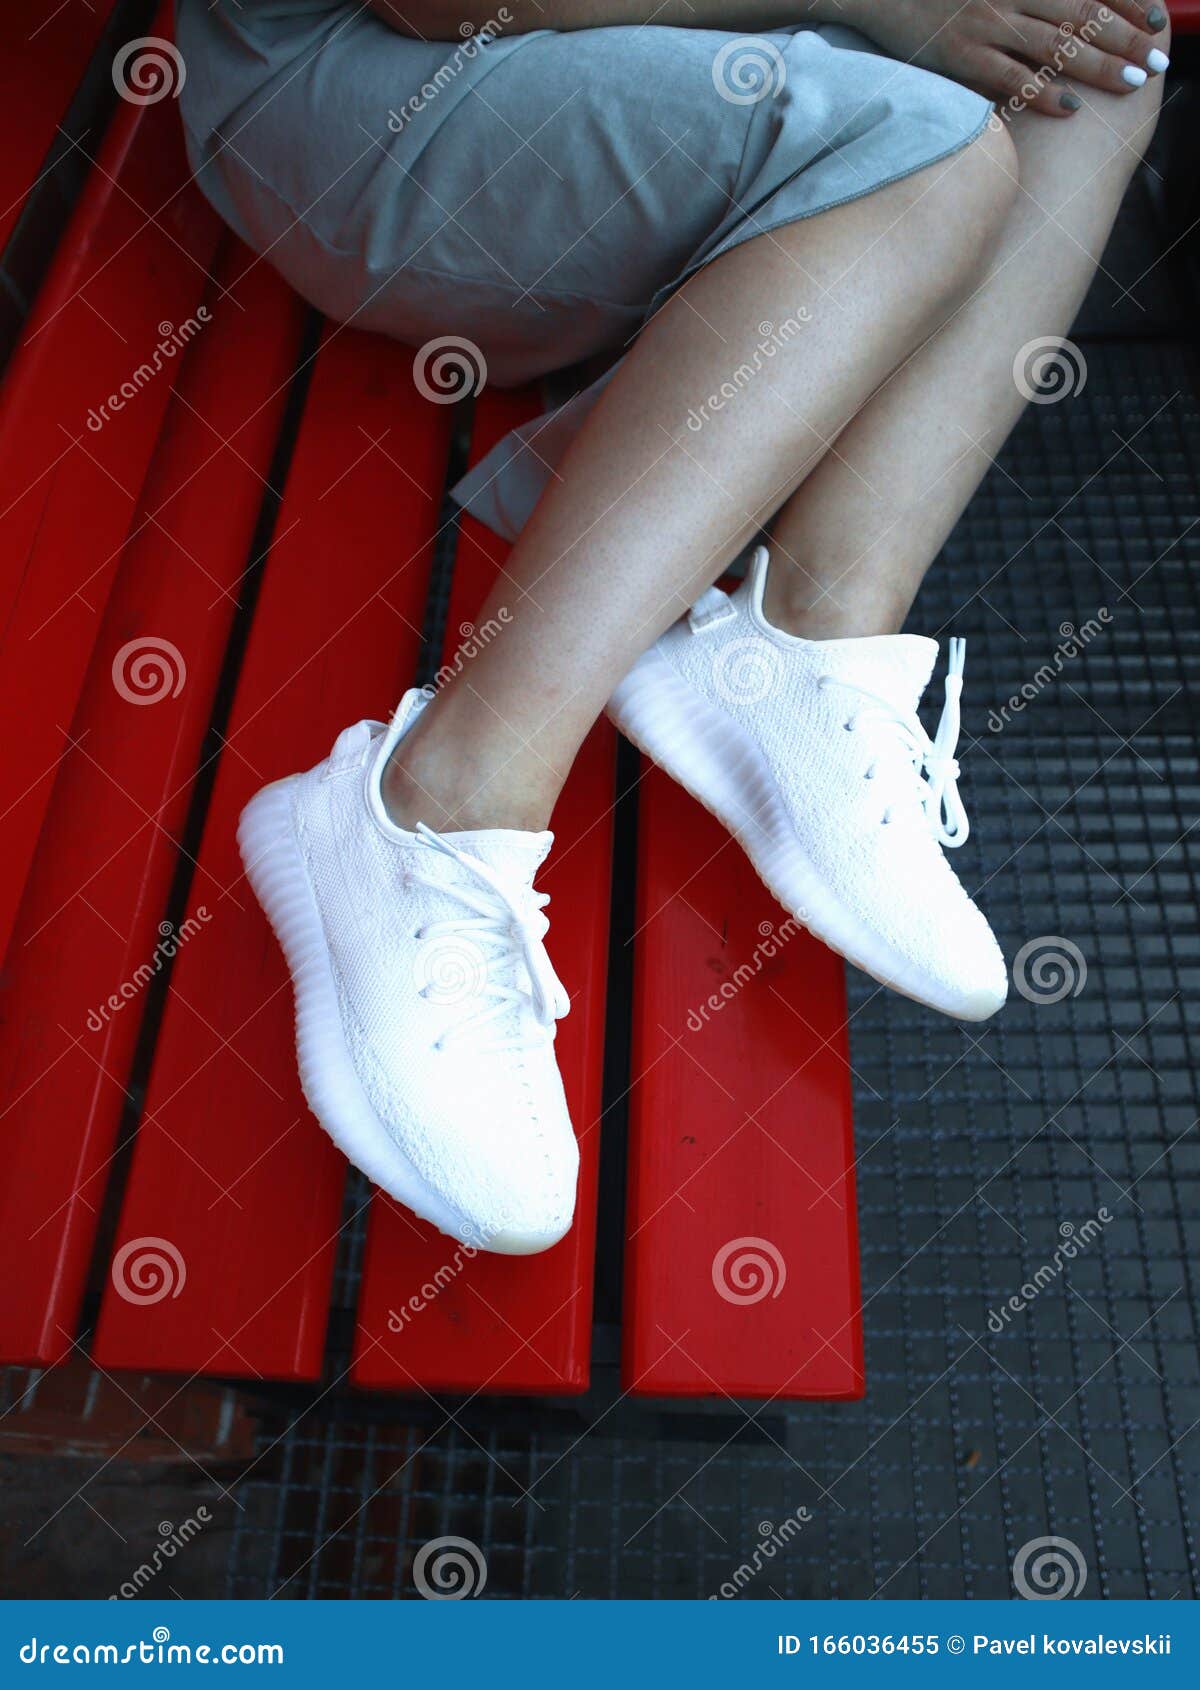 yeezy girl sneakers